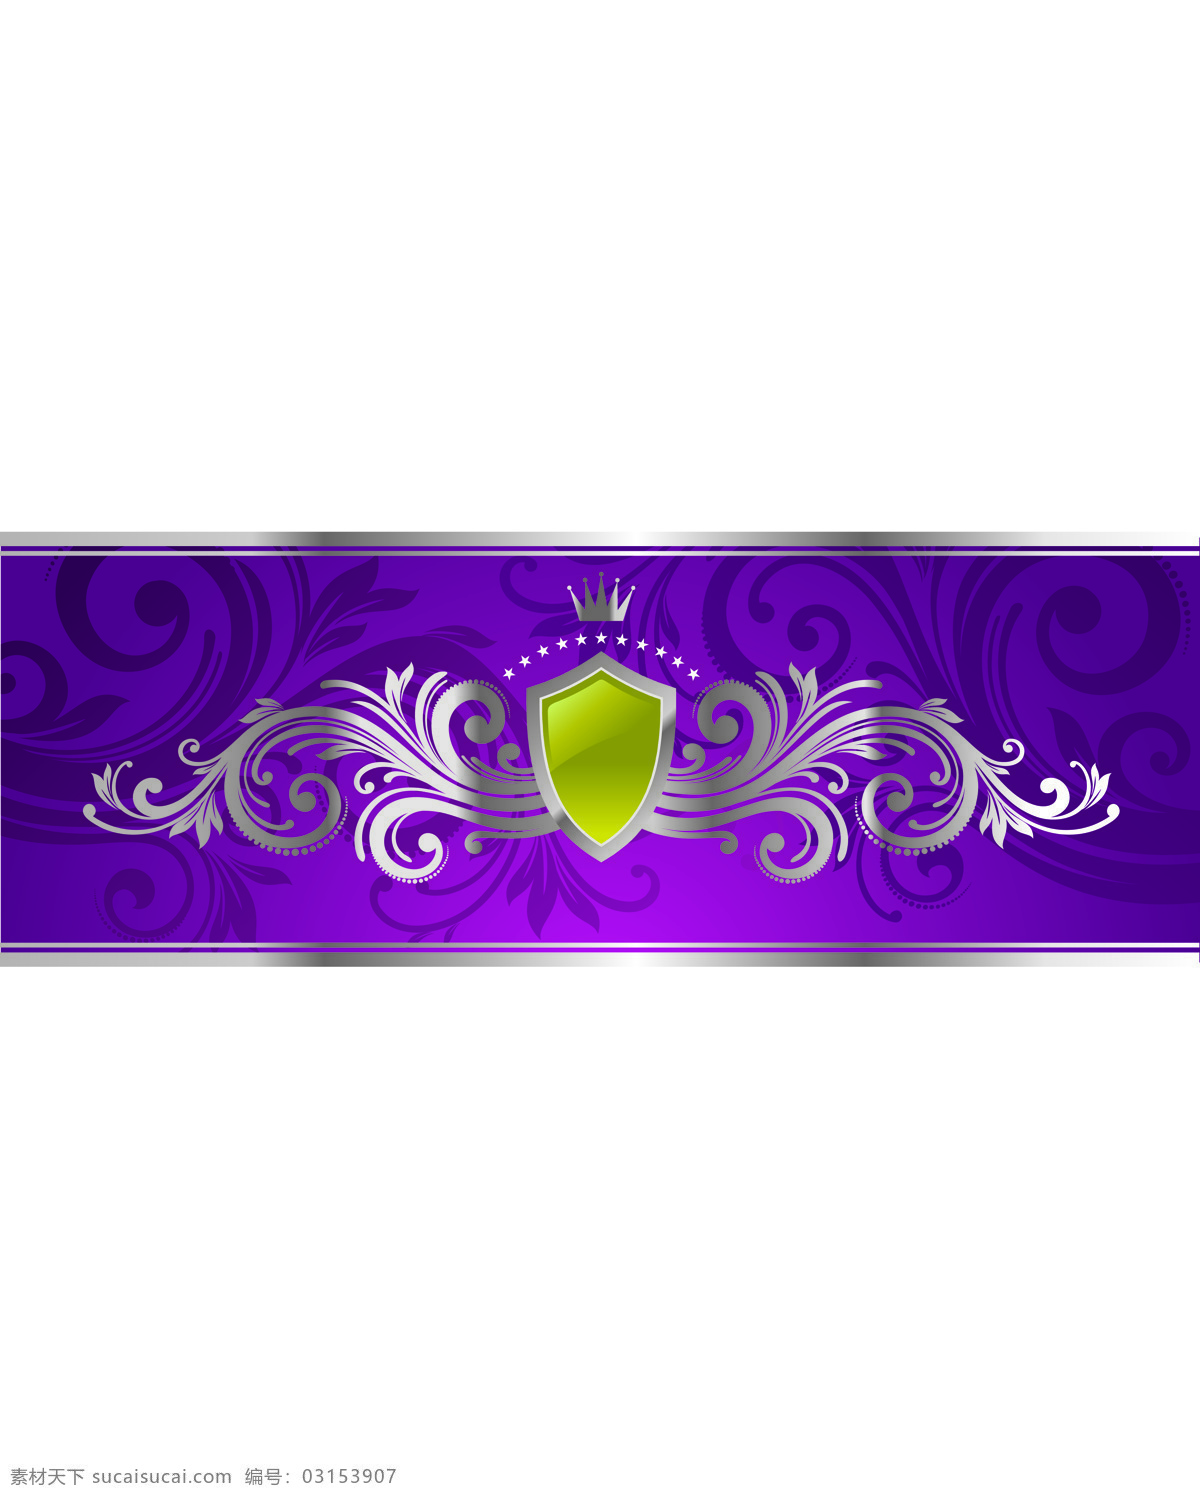 霸气 皇冠 室内 移门 创意 画 移门画 印花 紫色 效果图